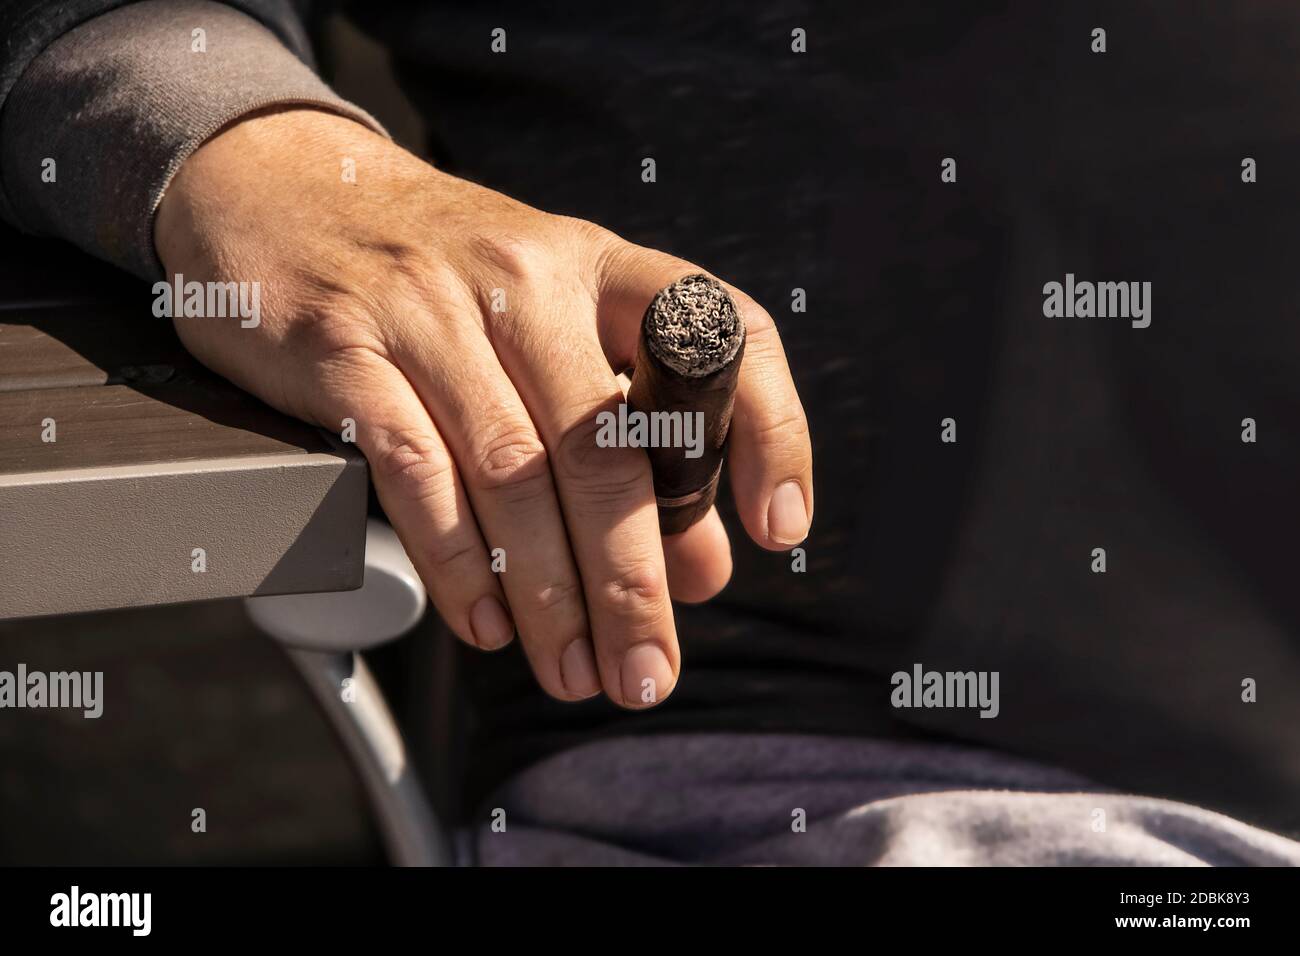 Primo piano della mano dell'uomo che poggia sul lato del tavolo accanto la sua sedia che tiene un sigaro illuminato Foto Stock